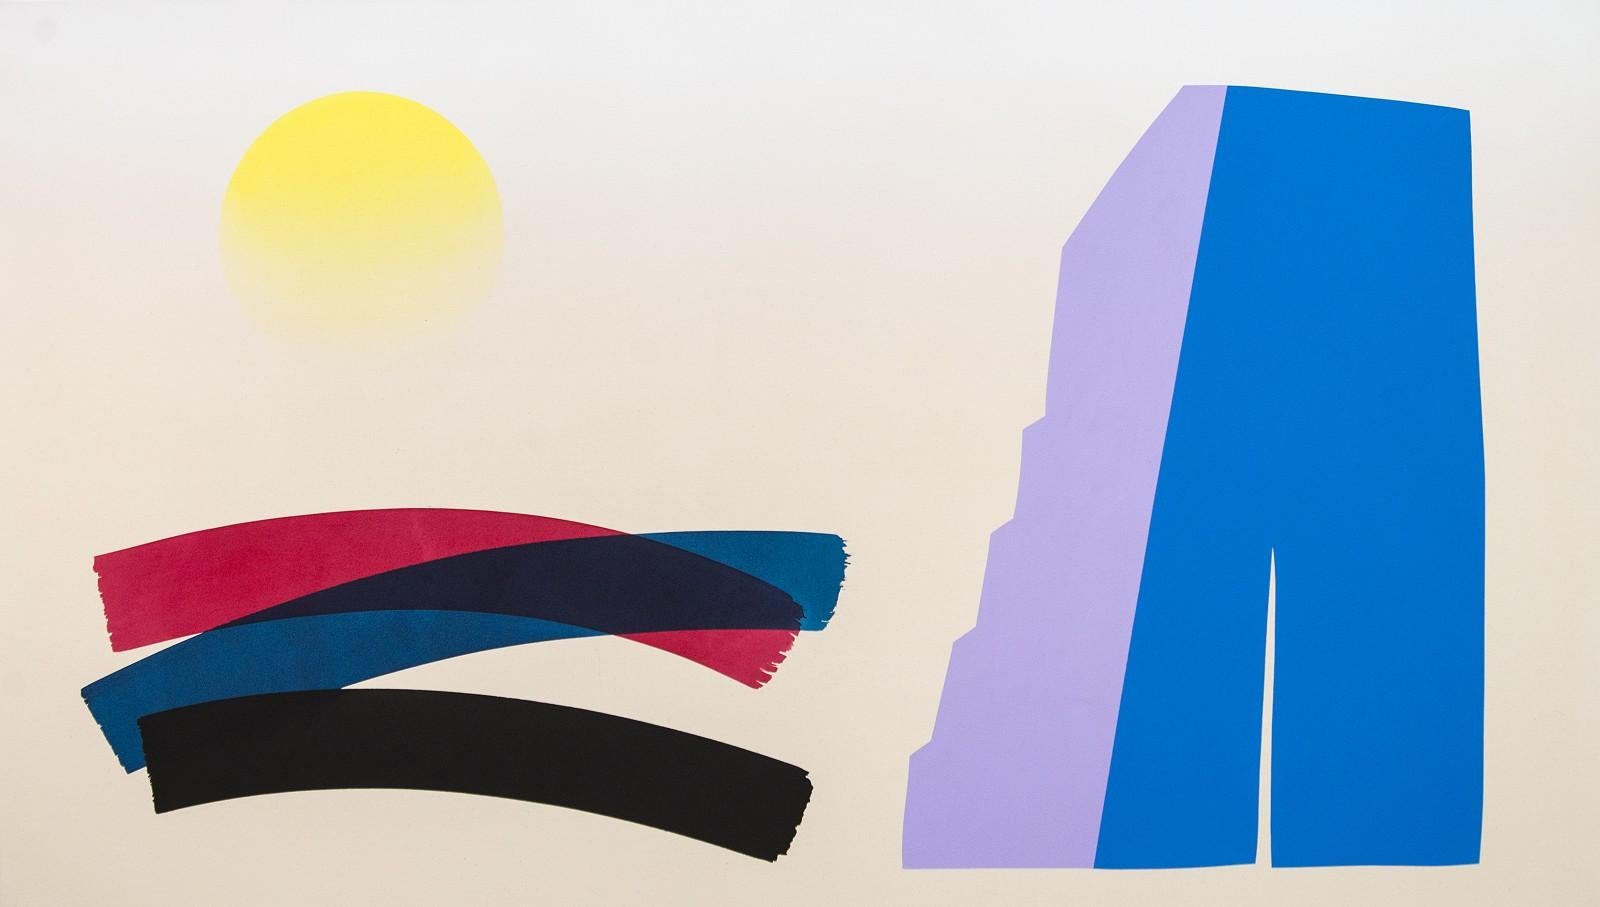 Abstract Painting Aron Hill - Grande toile acrylique sur toile bleue et lavande avec un soleil délavé - colorée et abstraite